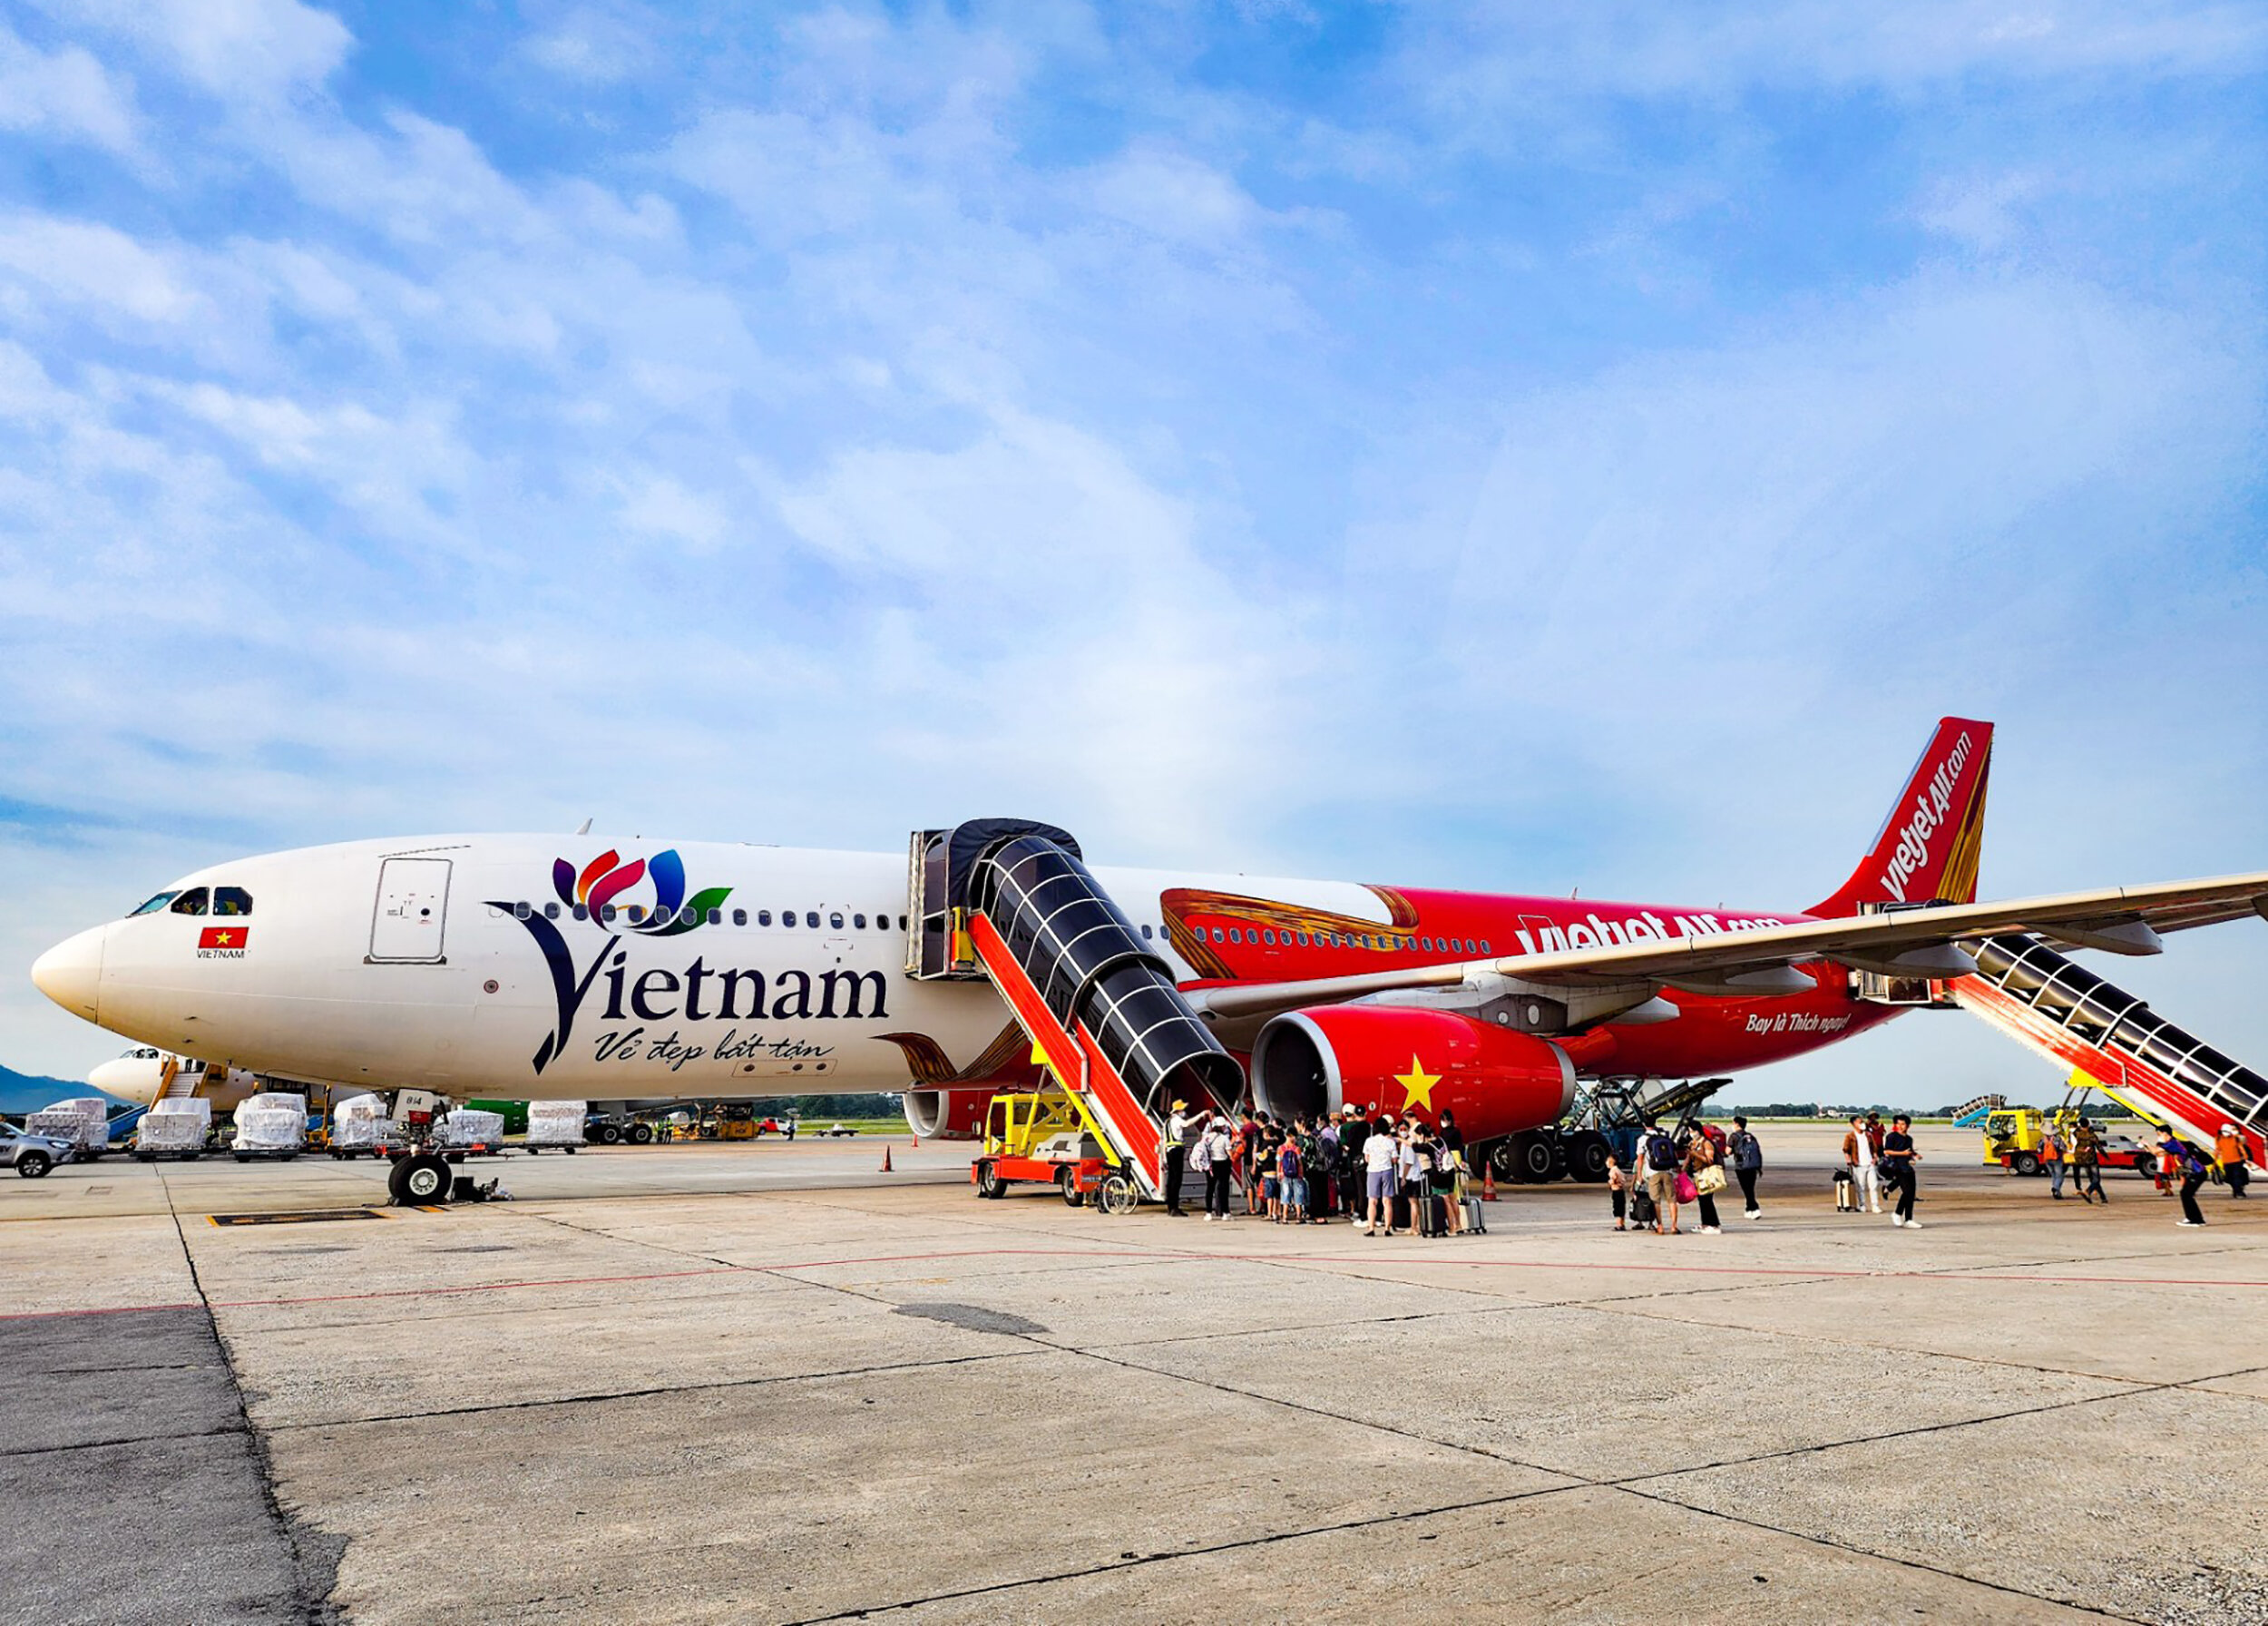 Tàu bay thân rộng A330 mang biểu tượng du lịch Việt Nam đã được Vietjet đưa vào khai thác, đưa thêm nhiều du khách quốc tế đến với Việt Nam hơn. (Ảnh: Q.N)